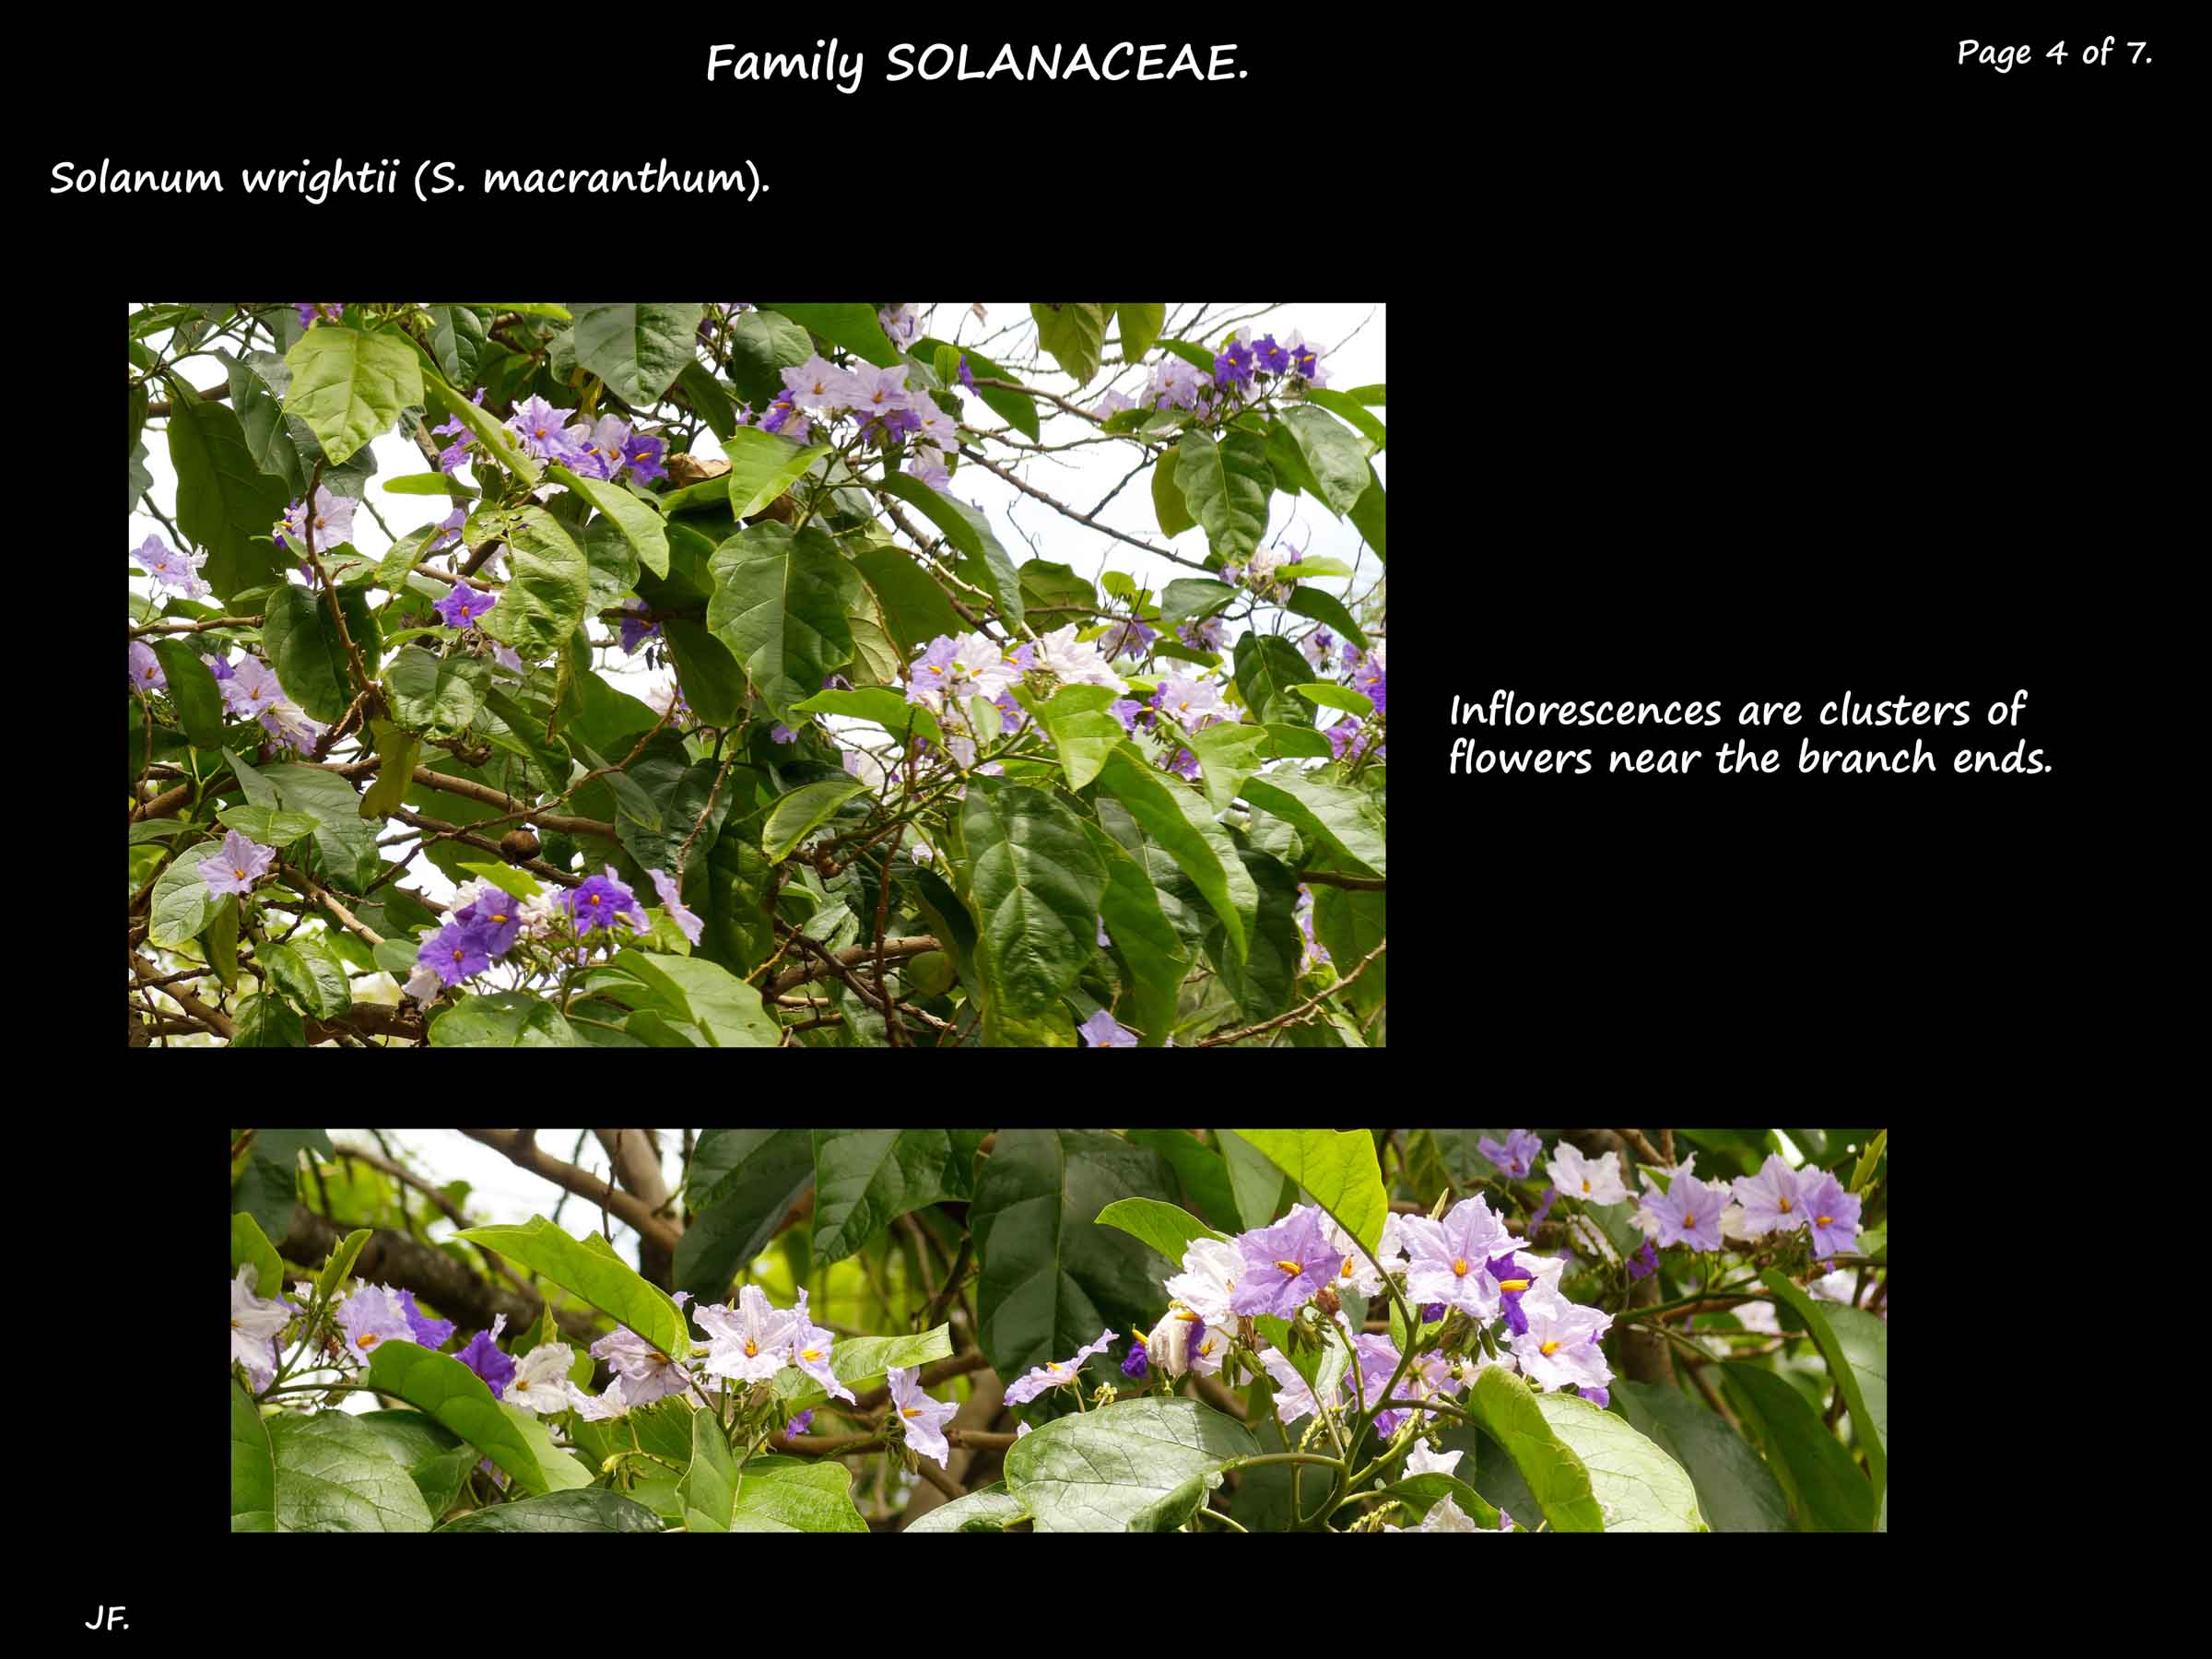 4 Solanum wrightii flowering